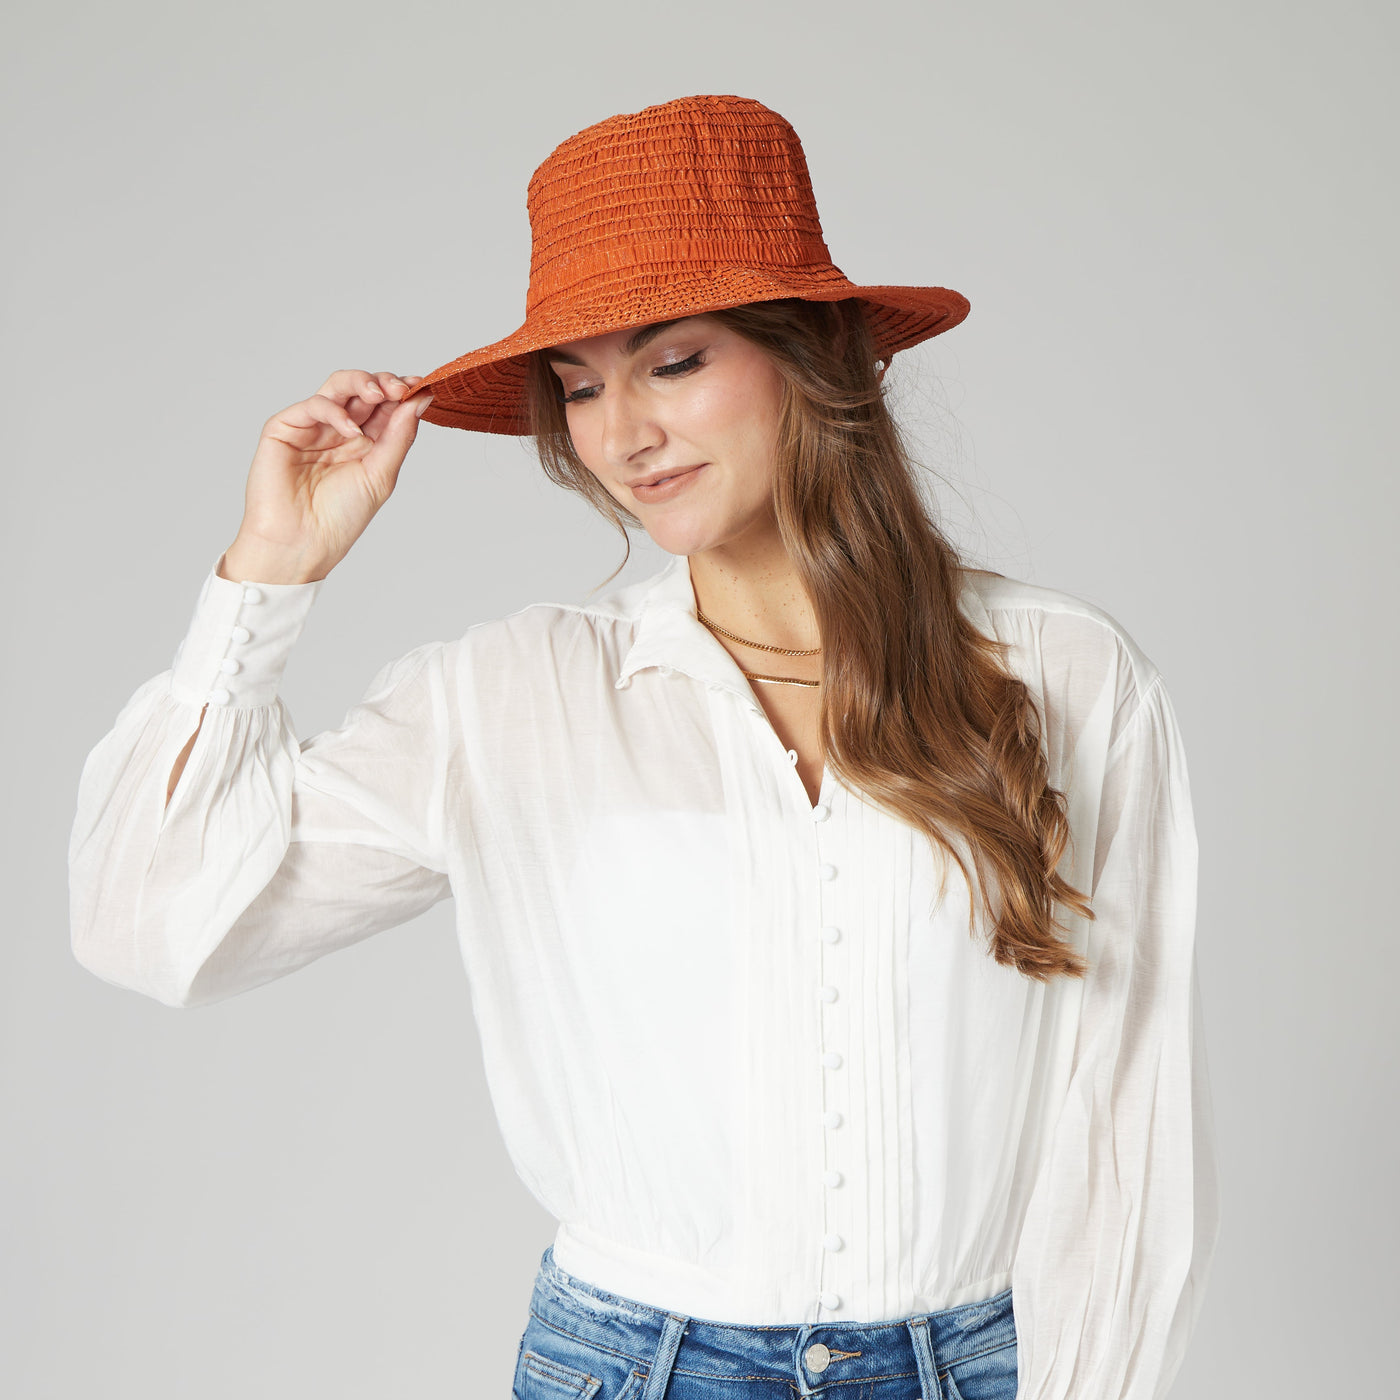 SUN BRIM - Women's Shimmery Ribbon Sun Hat